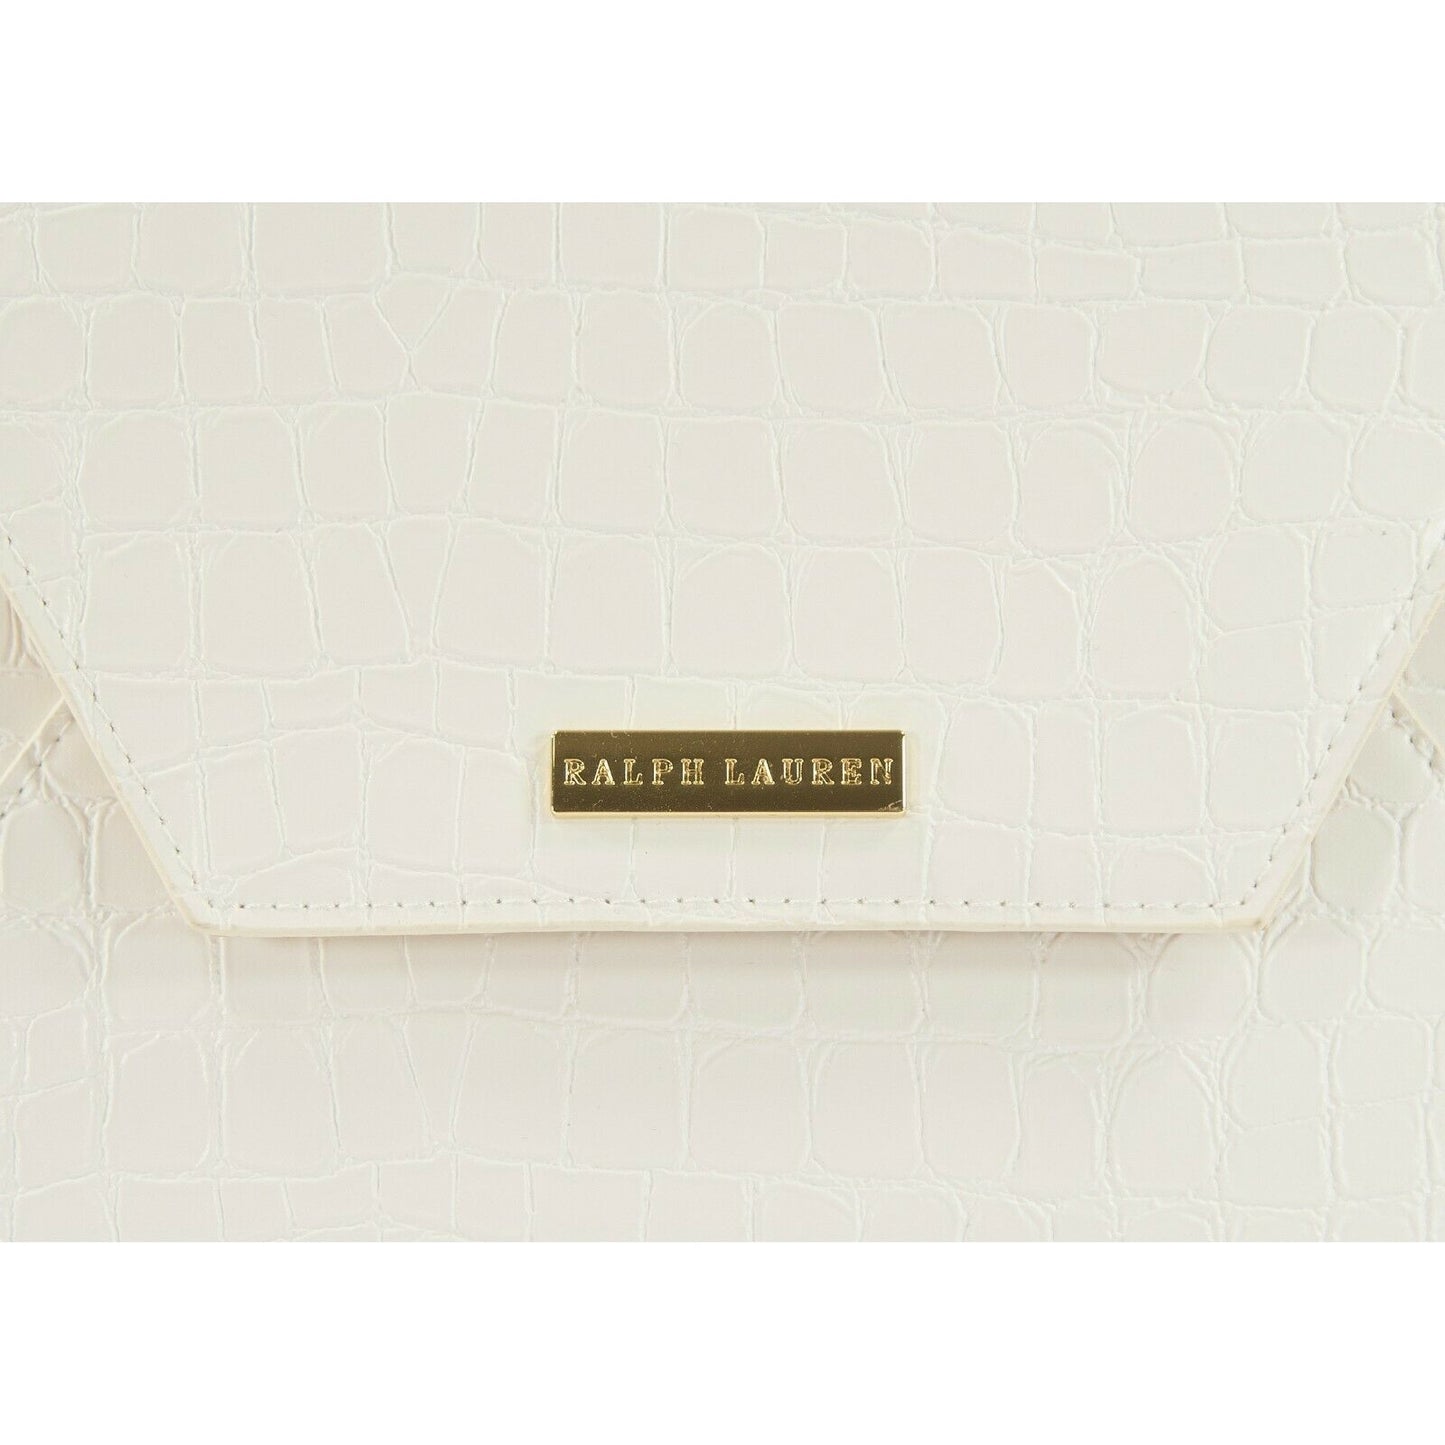 Ralph Lauren White Croc Envelope Large Pouch Clutch Bag NWT